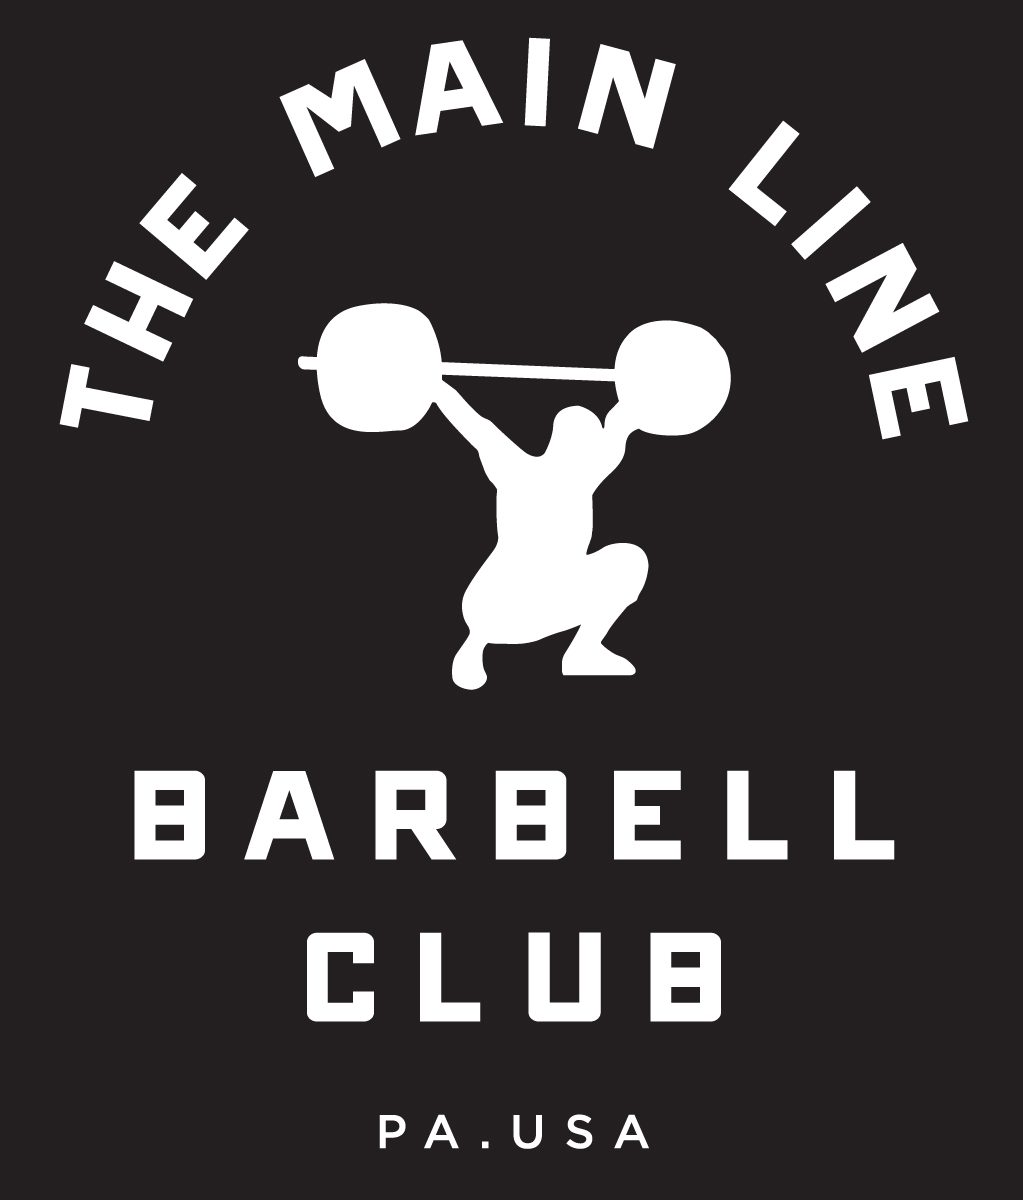 Week of 5.30.16 Barbell Club